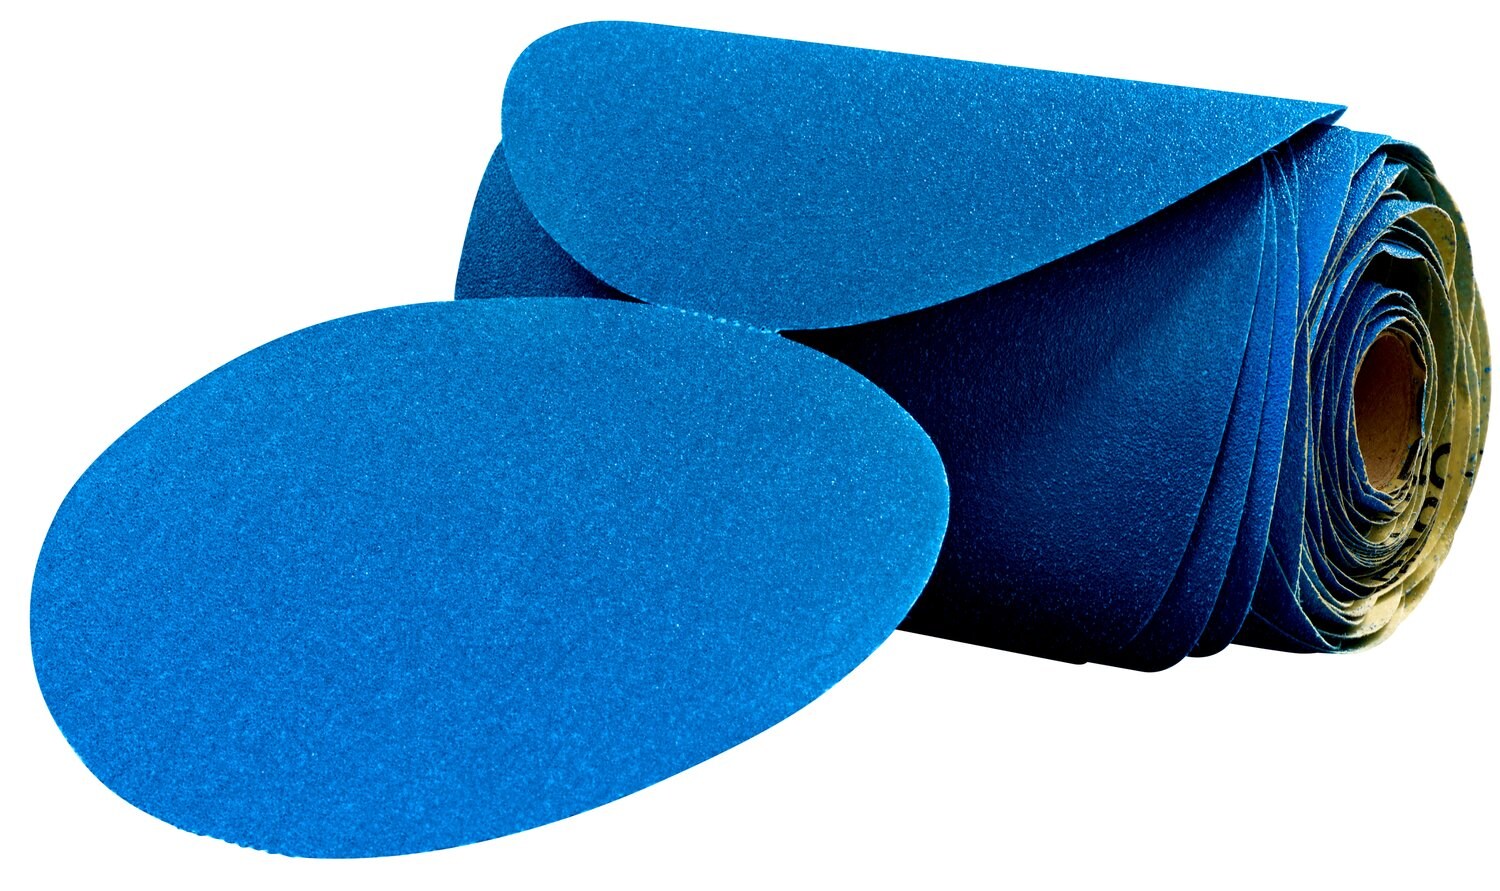 7100098199 - 3M Stikit Blue Abrasive Disc Roll, 36214, 6 in, 800 grade, 100 discs
per roll, 5 rolls per case